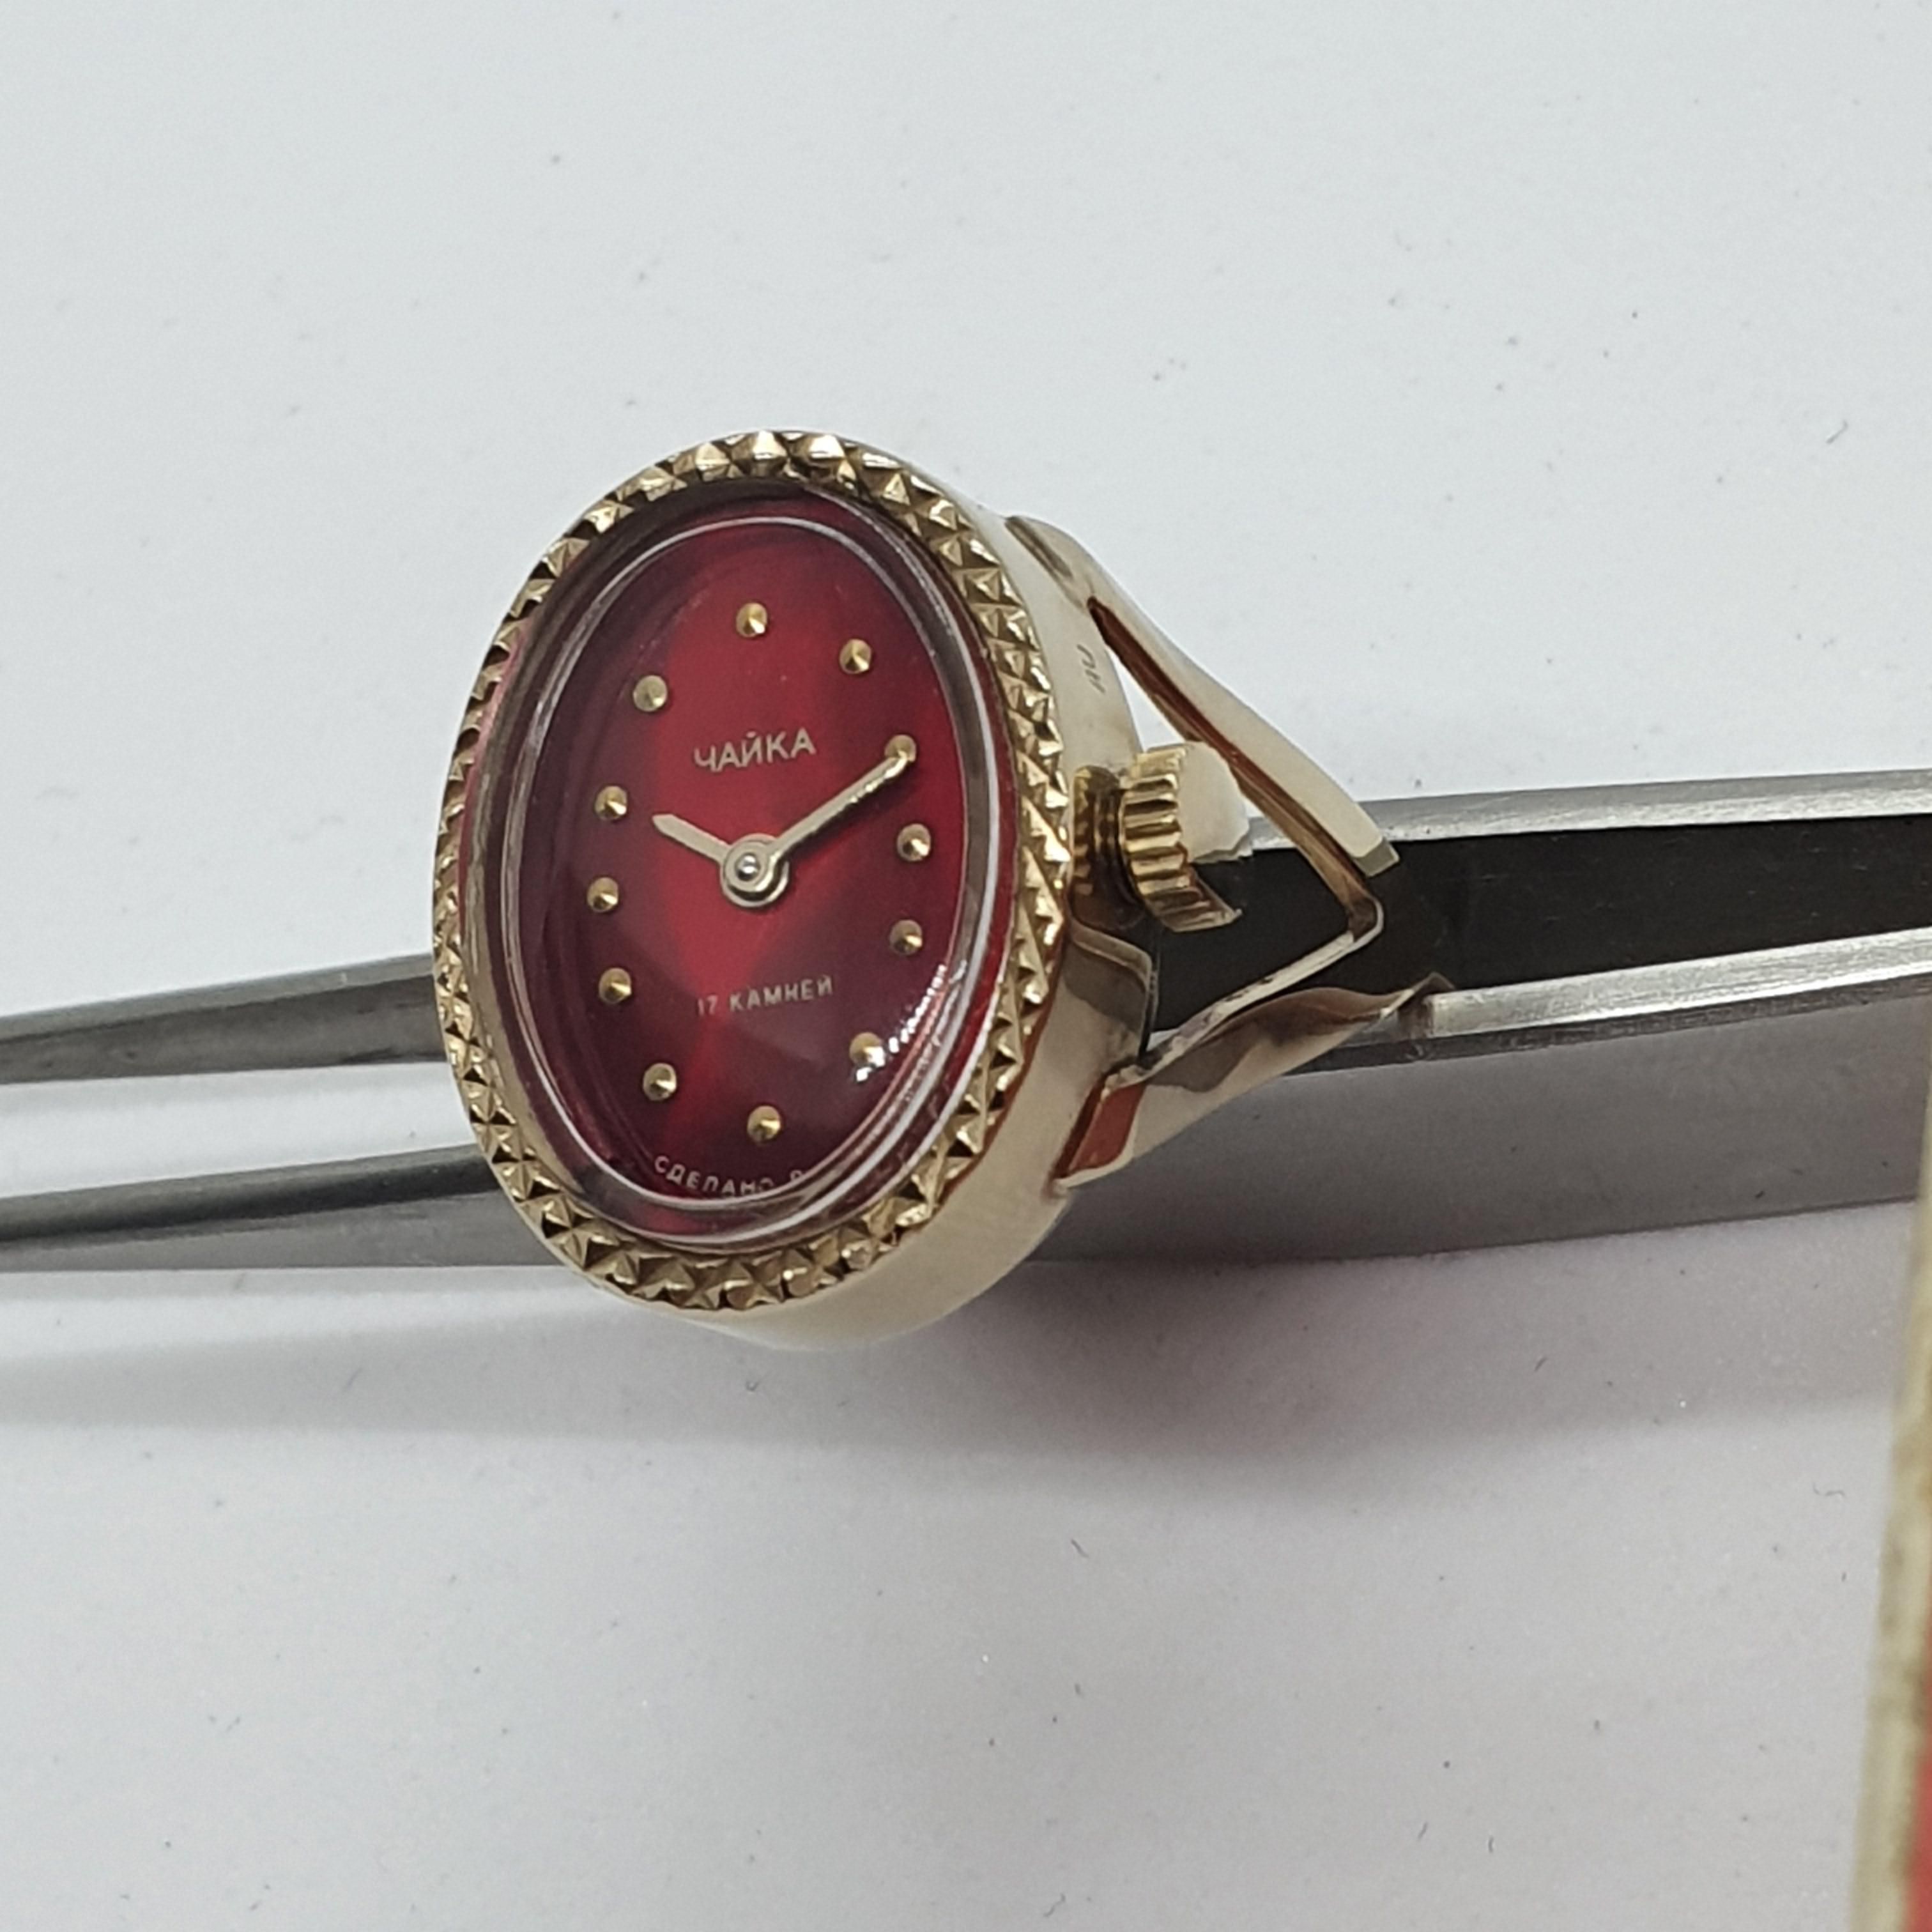 Nhẫn đồng hồ Liên Xô Chaika bọc vàng size 17,5 2521001